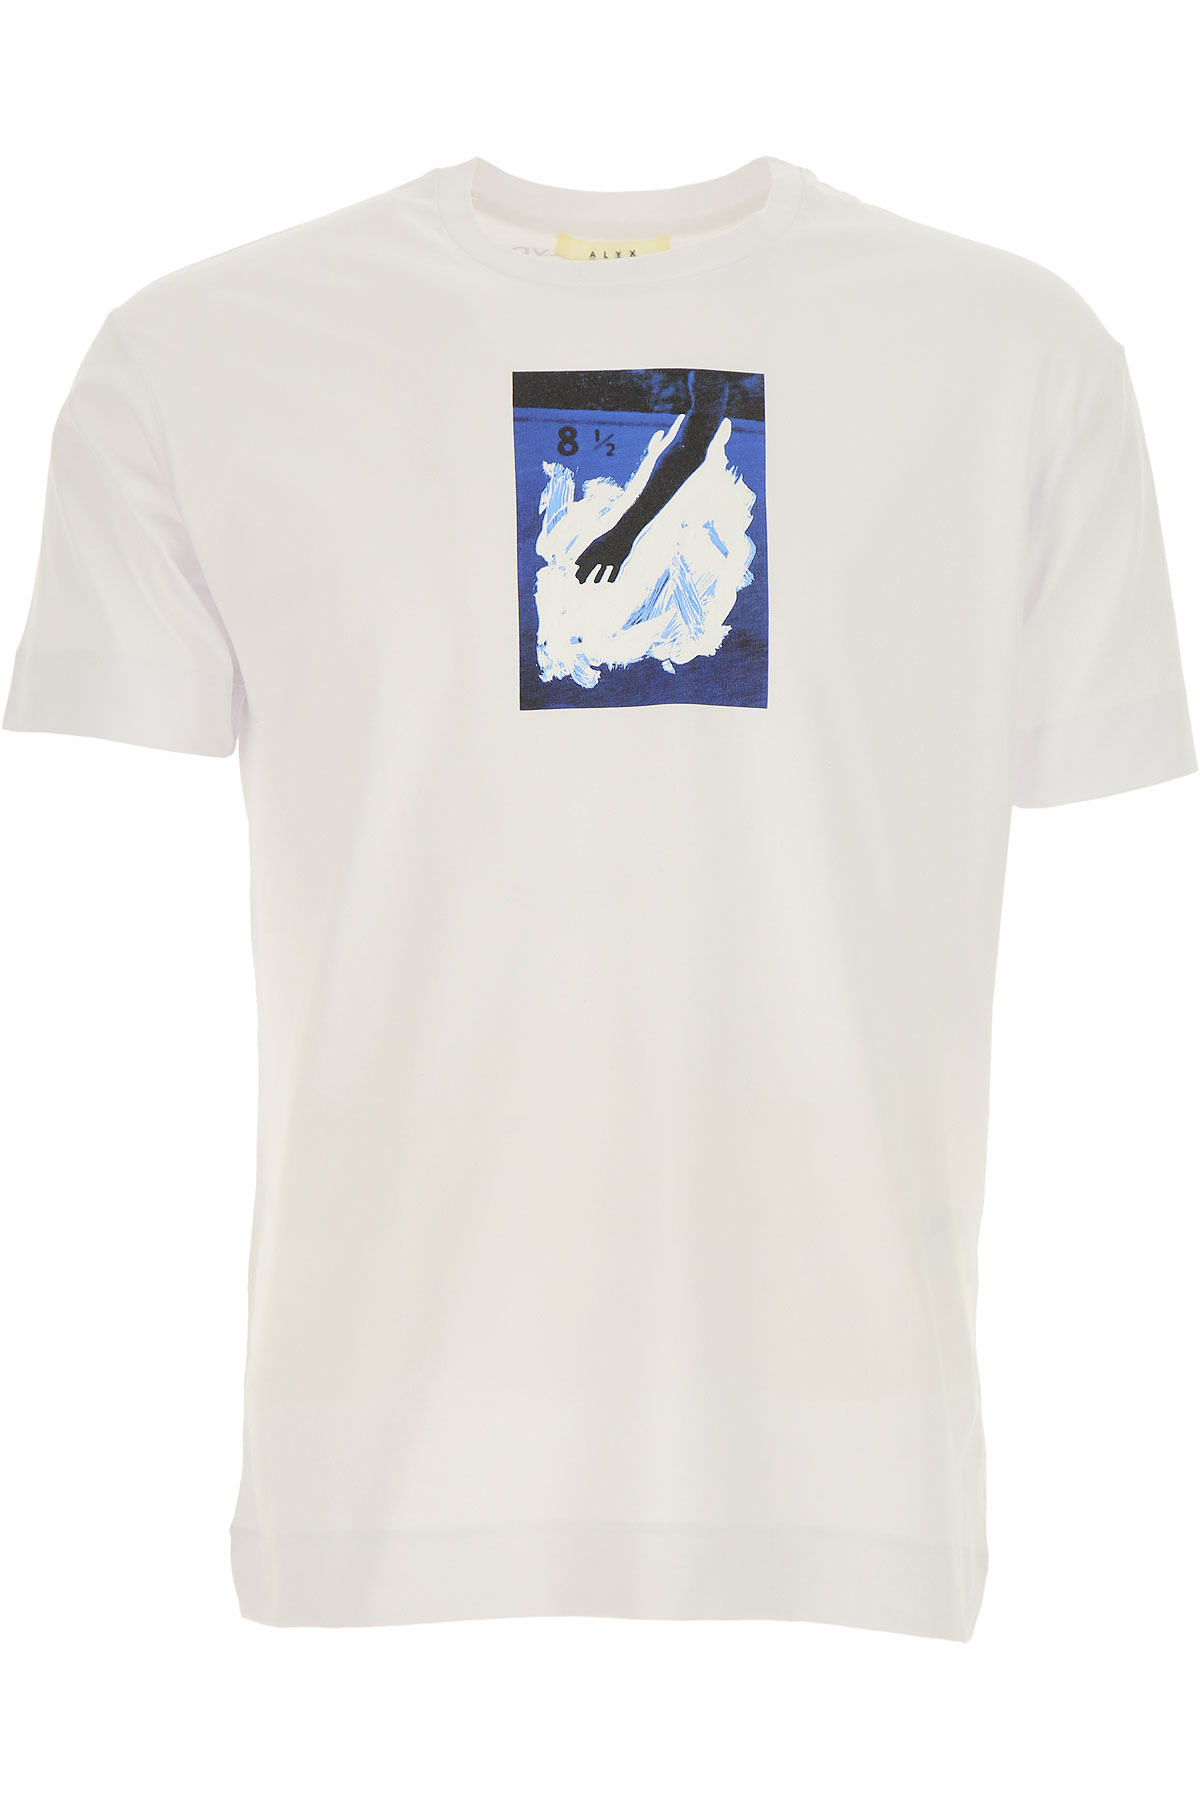 ALYX T-shirt Homme, Blanc, Coton, 2017, M S